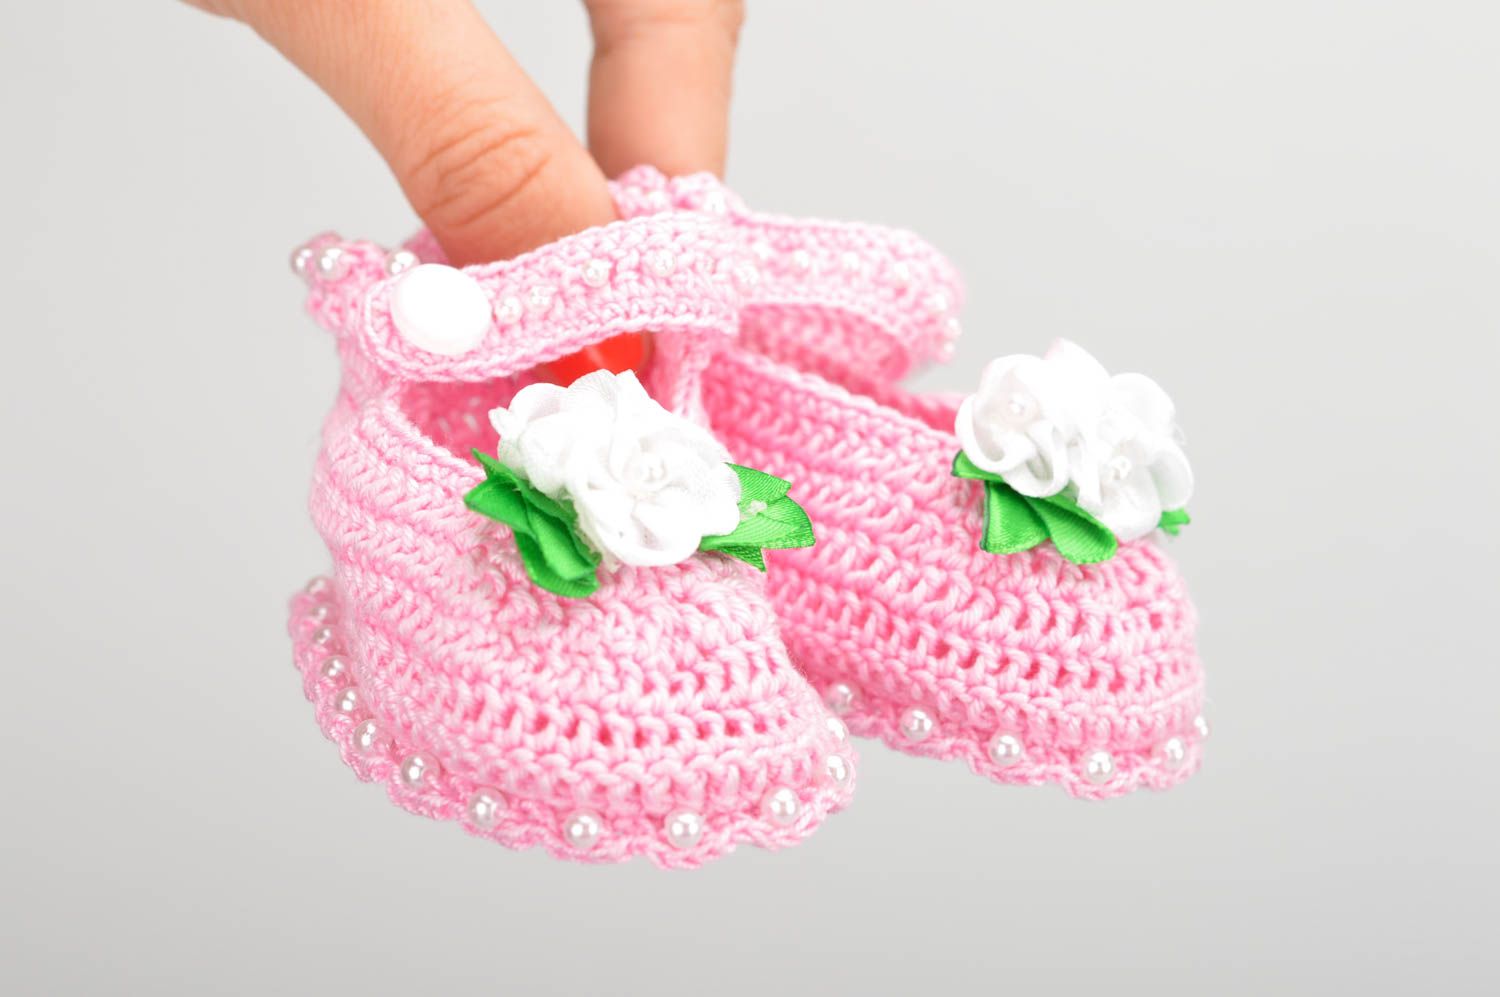 Пинетки для младенцев вязаные крючком из акрила хэнд мэйд розовые для девочки фото 3